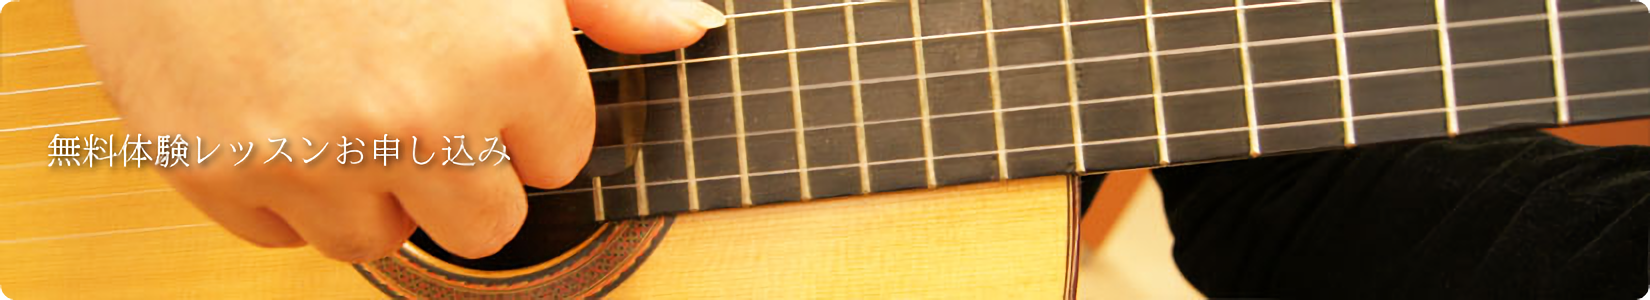 金沢ギター教室 無料体験レッスン